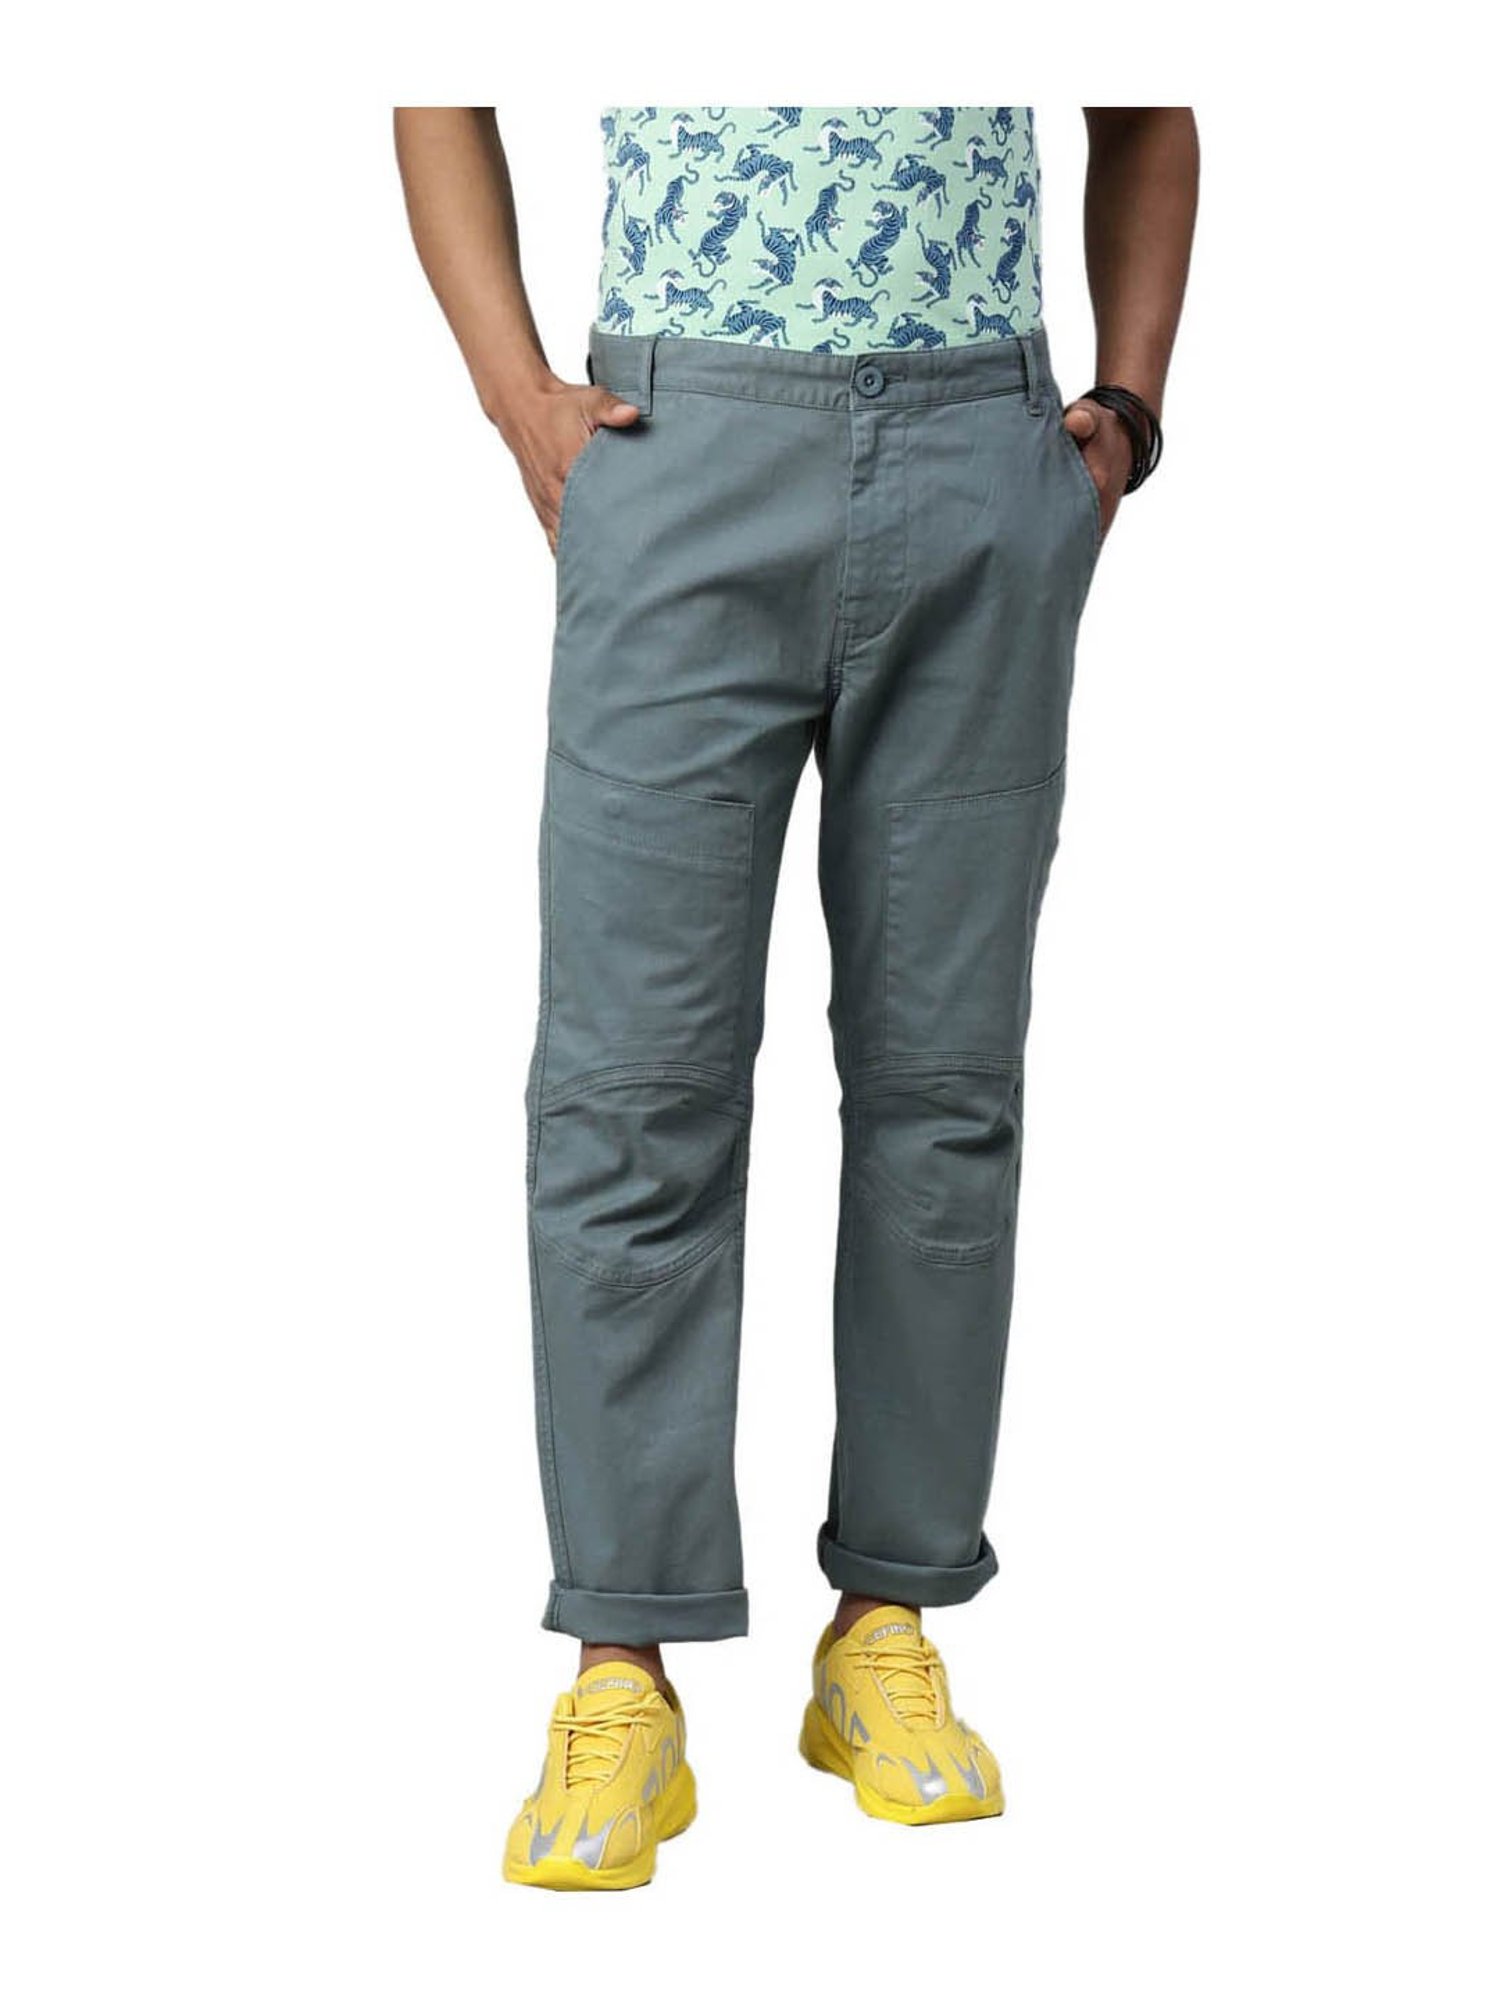 Buy Mens Green Slim Fit Cargo Trousers for Men Online at Bewakoof